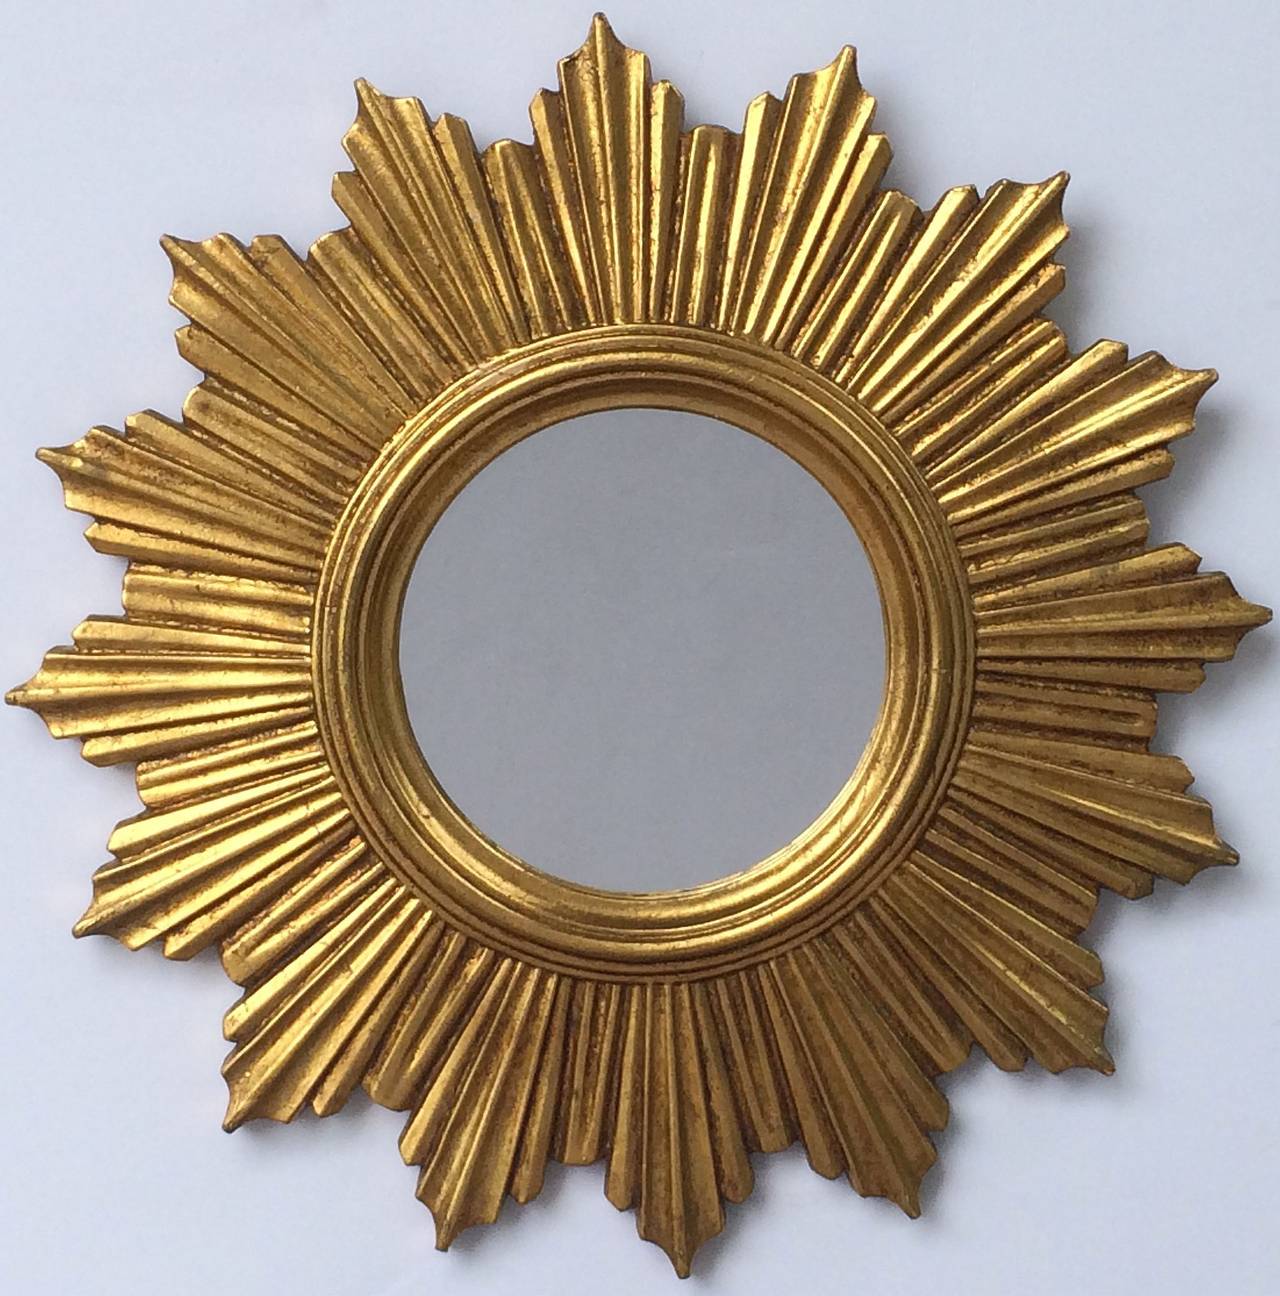 A lovely French gilt sunburst (or starburst) mirror, 18 1/2